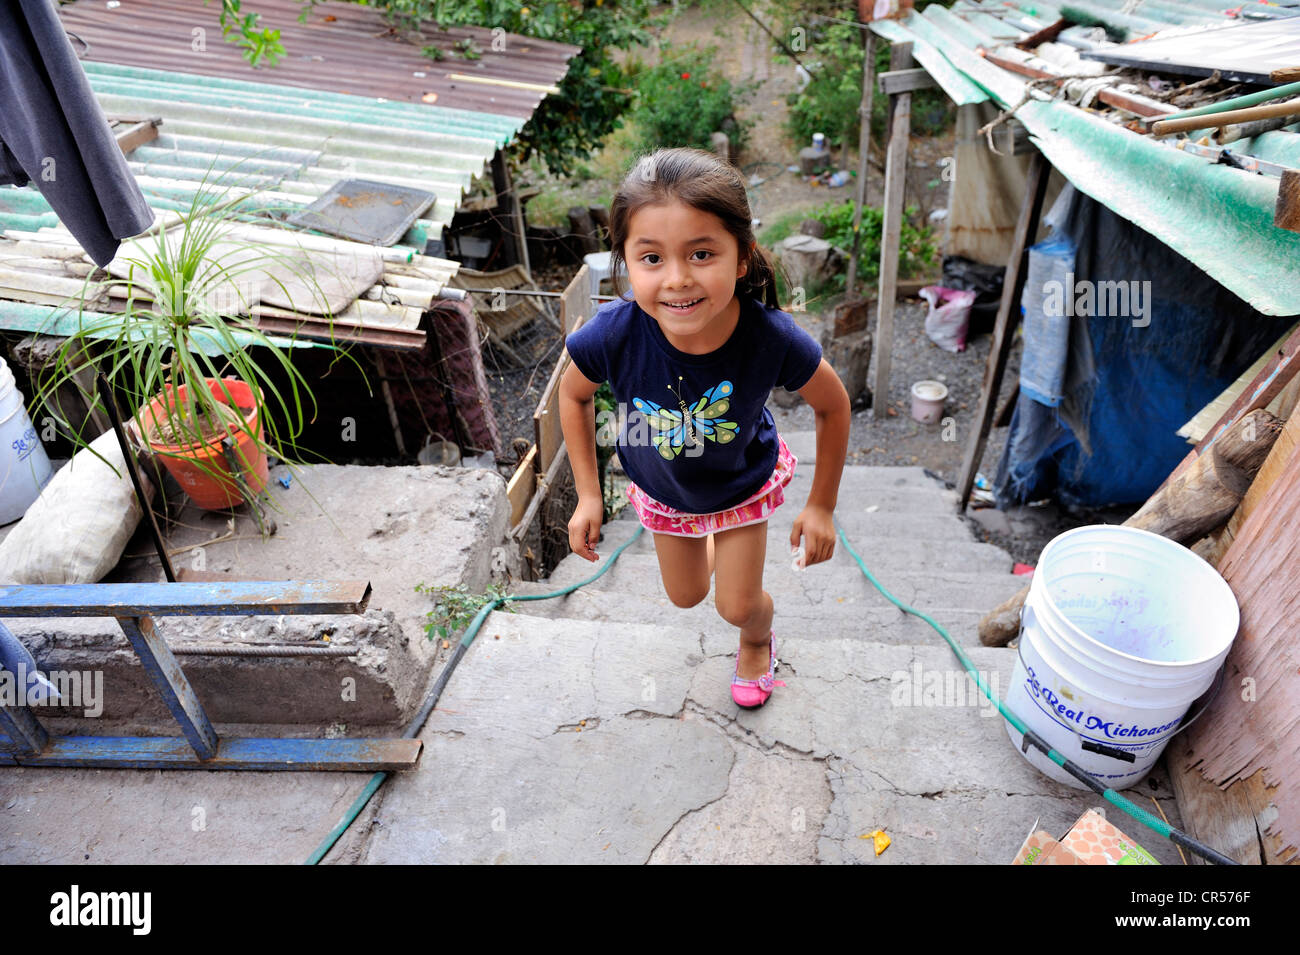 Fille dans un quartier pauvre, Queretaro, Mexique, Amérique du Nord, Amérique Latine Banque D'Images